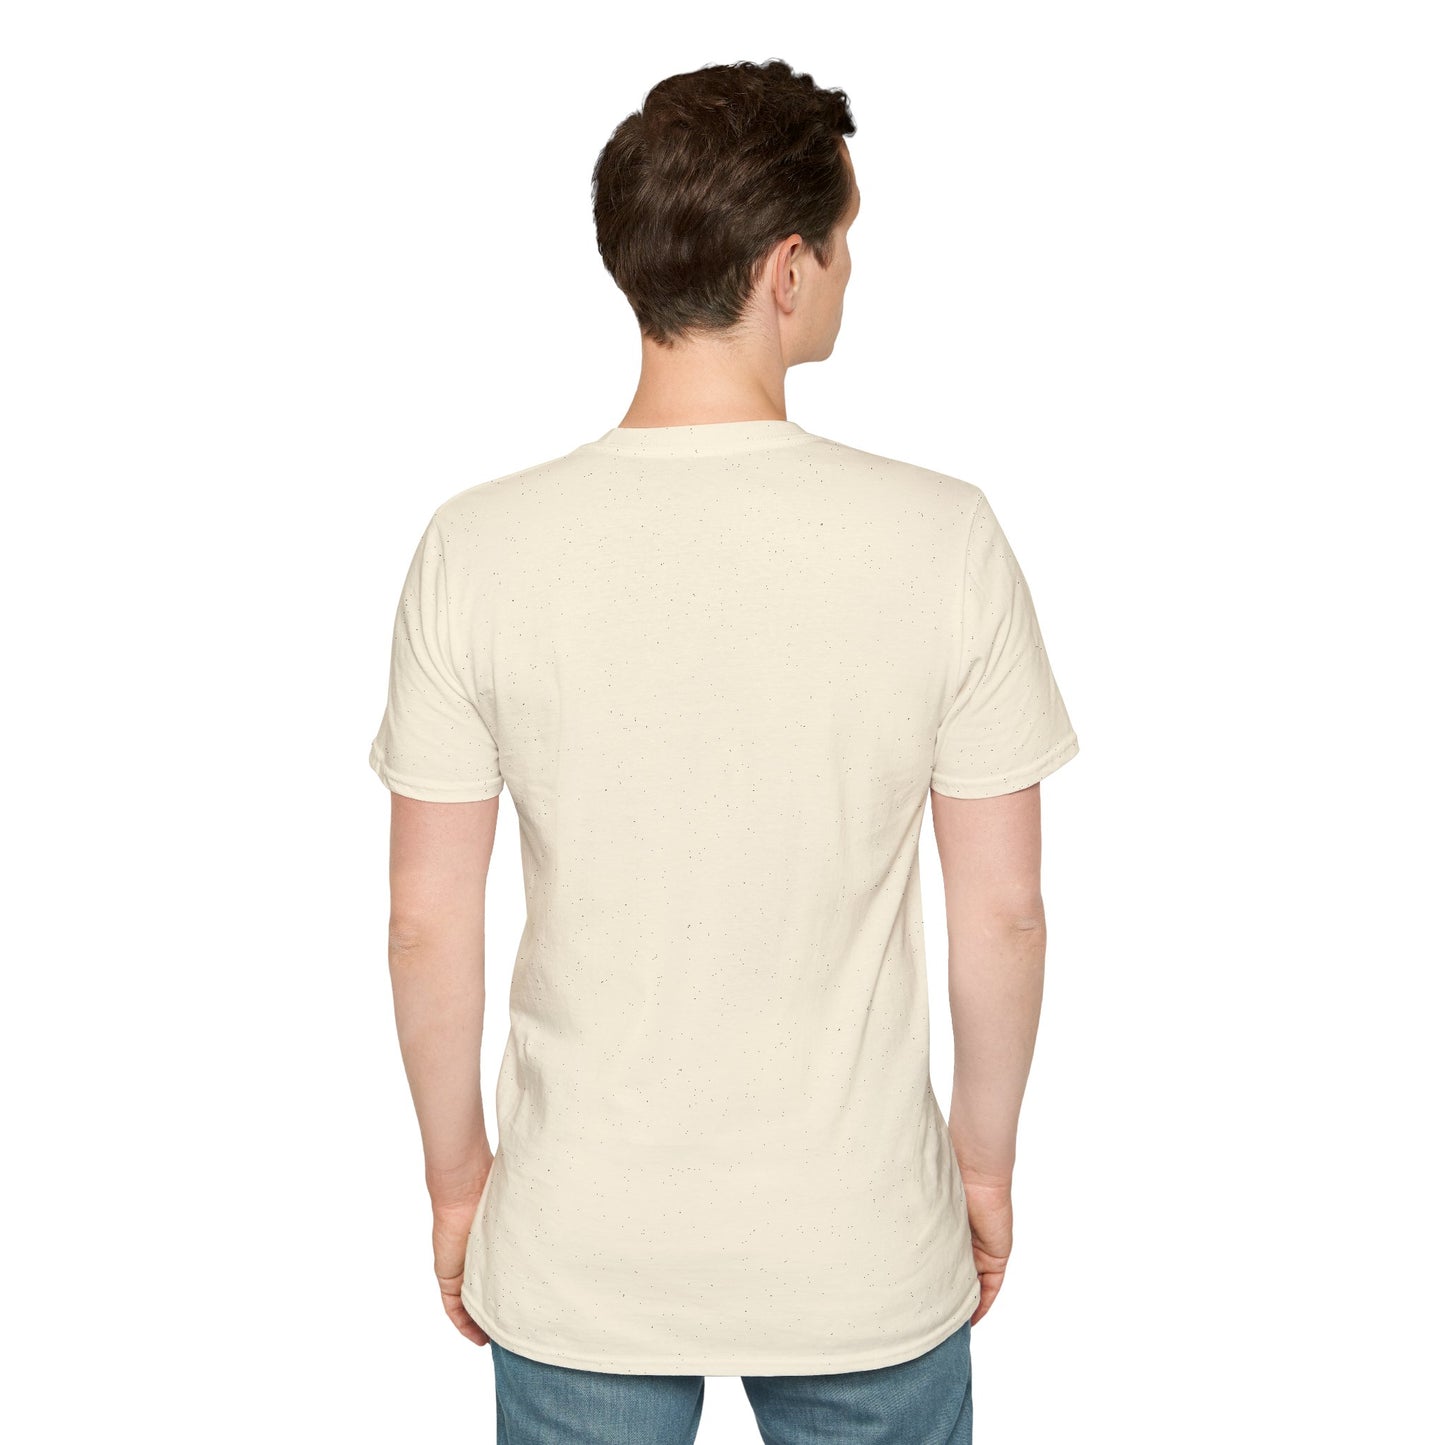 LCAM-15 Unisex Softstyle T-Shirt